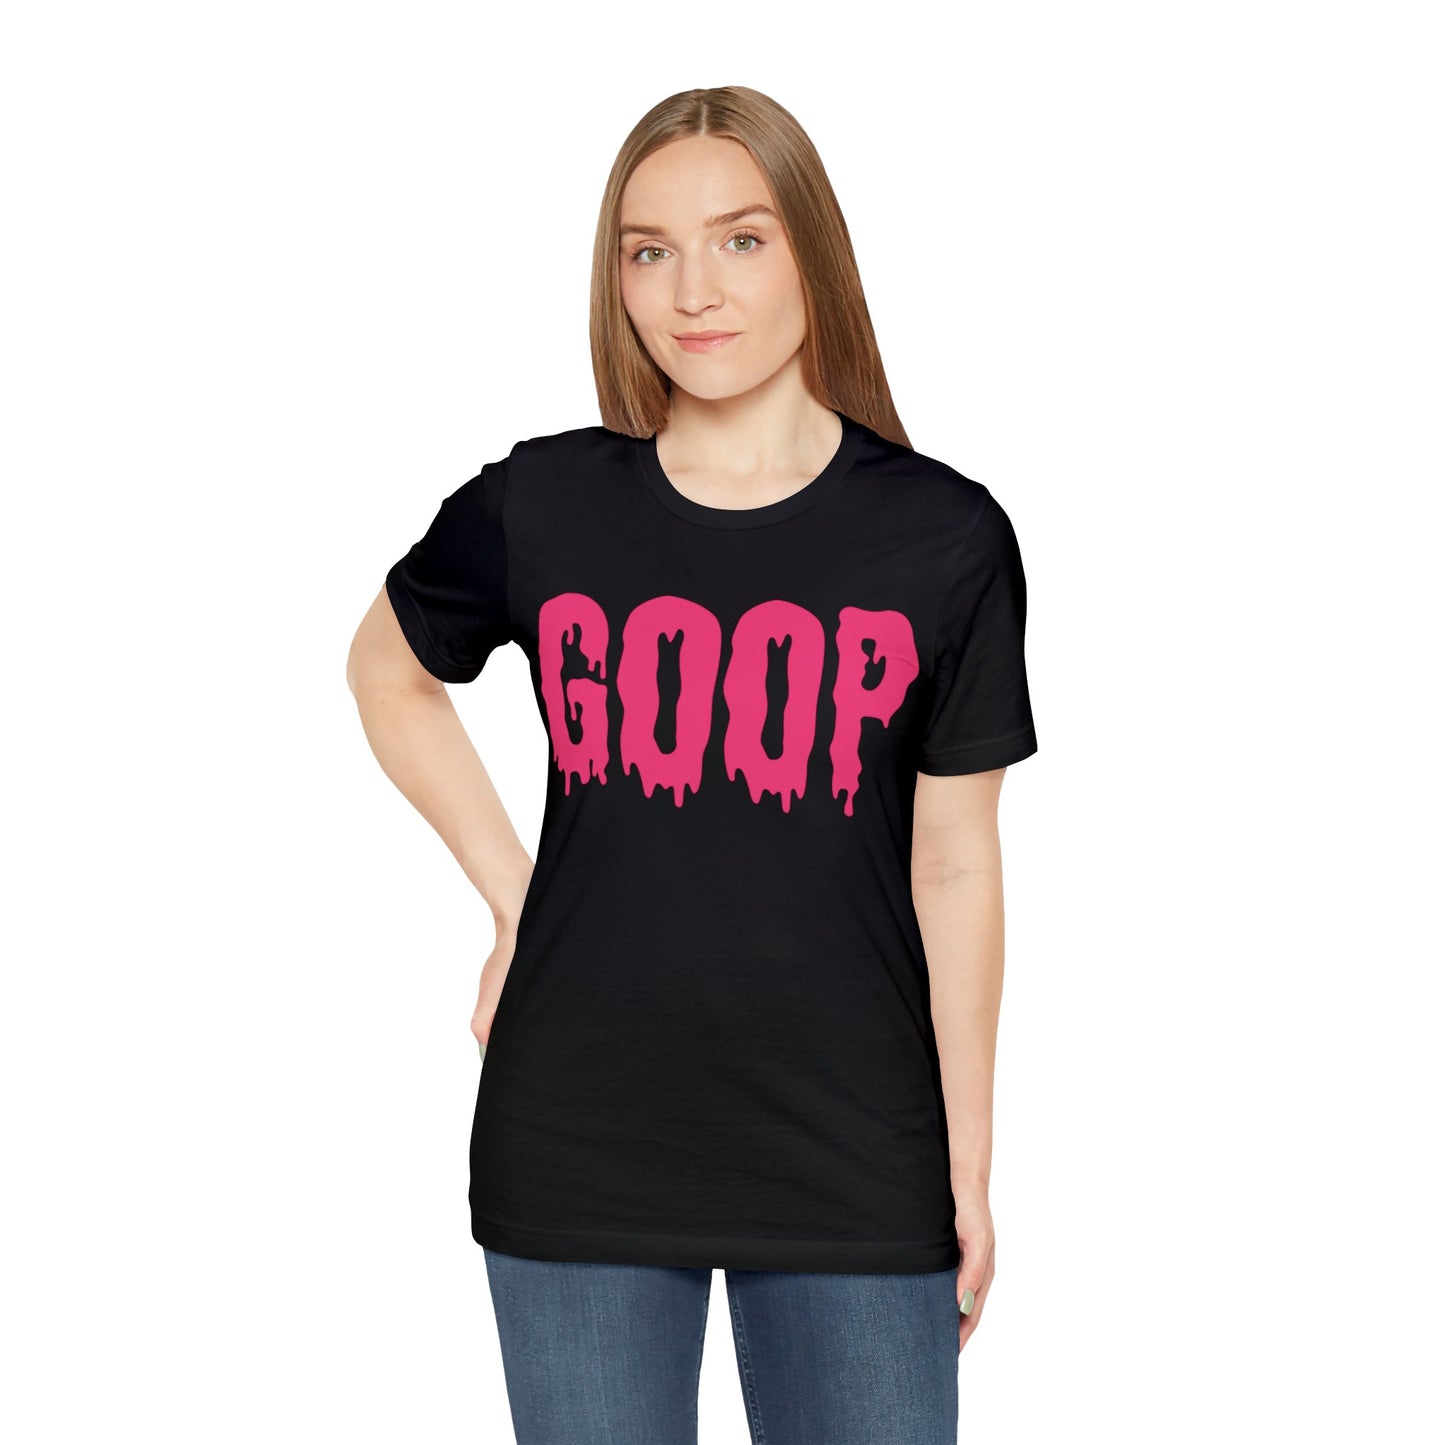 Goop T-Shirt